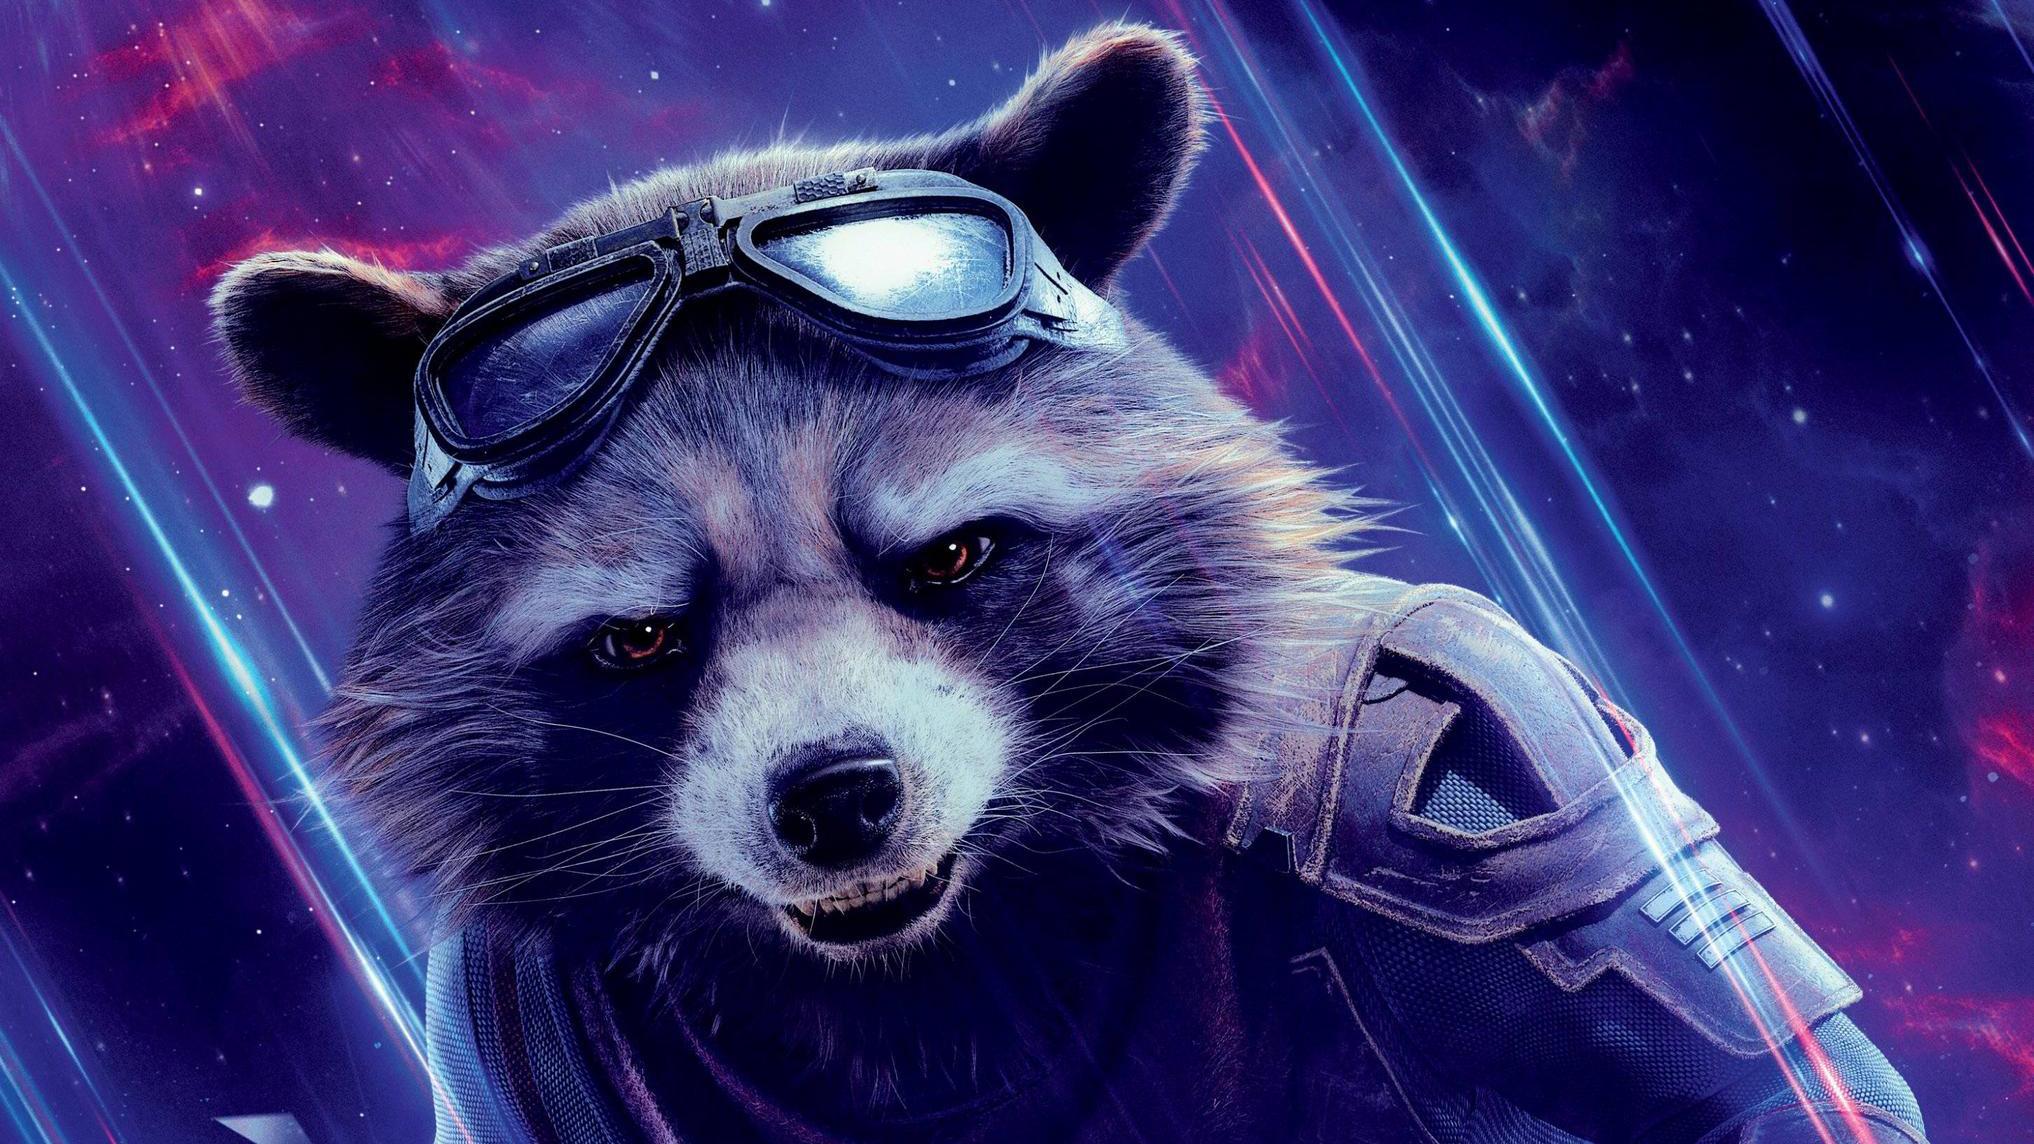 Avengers Endgame Wallpaper & Background Image